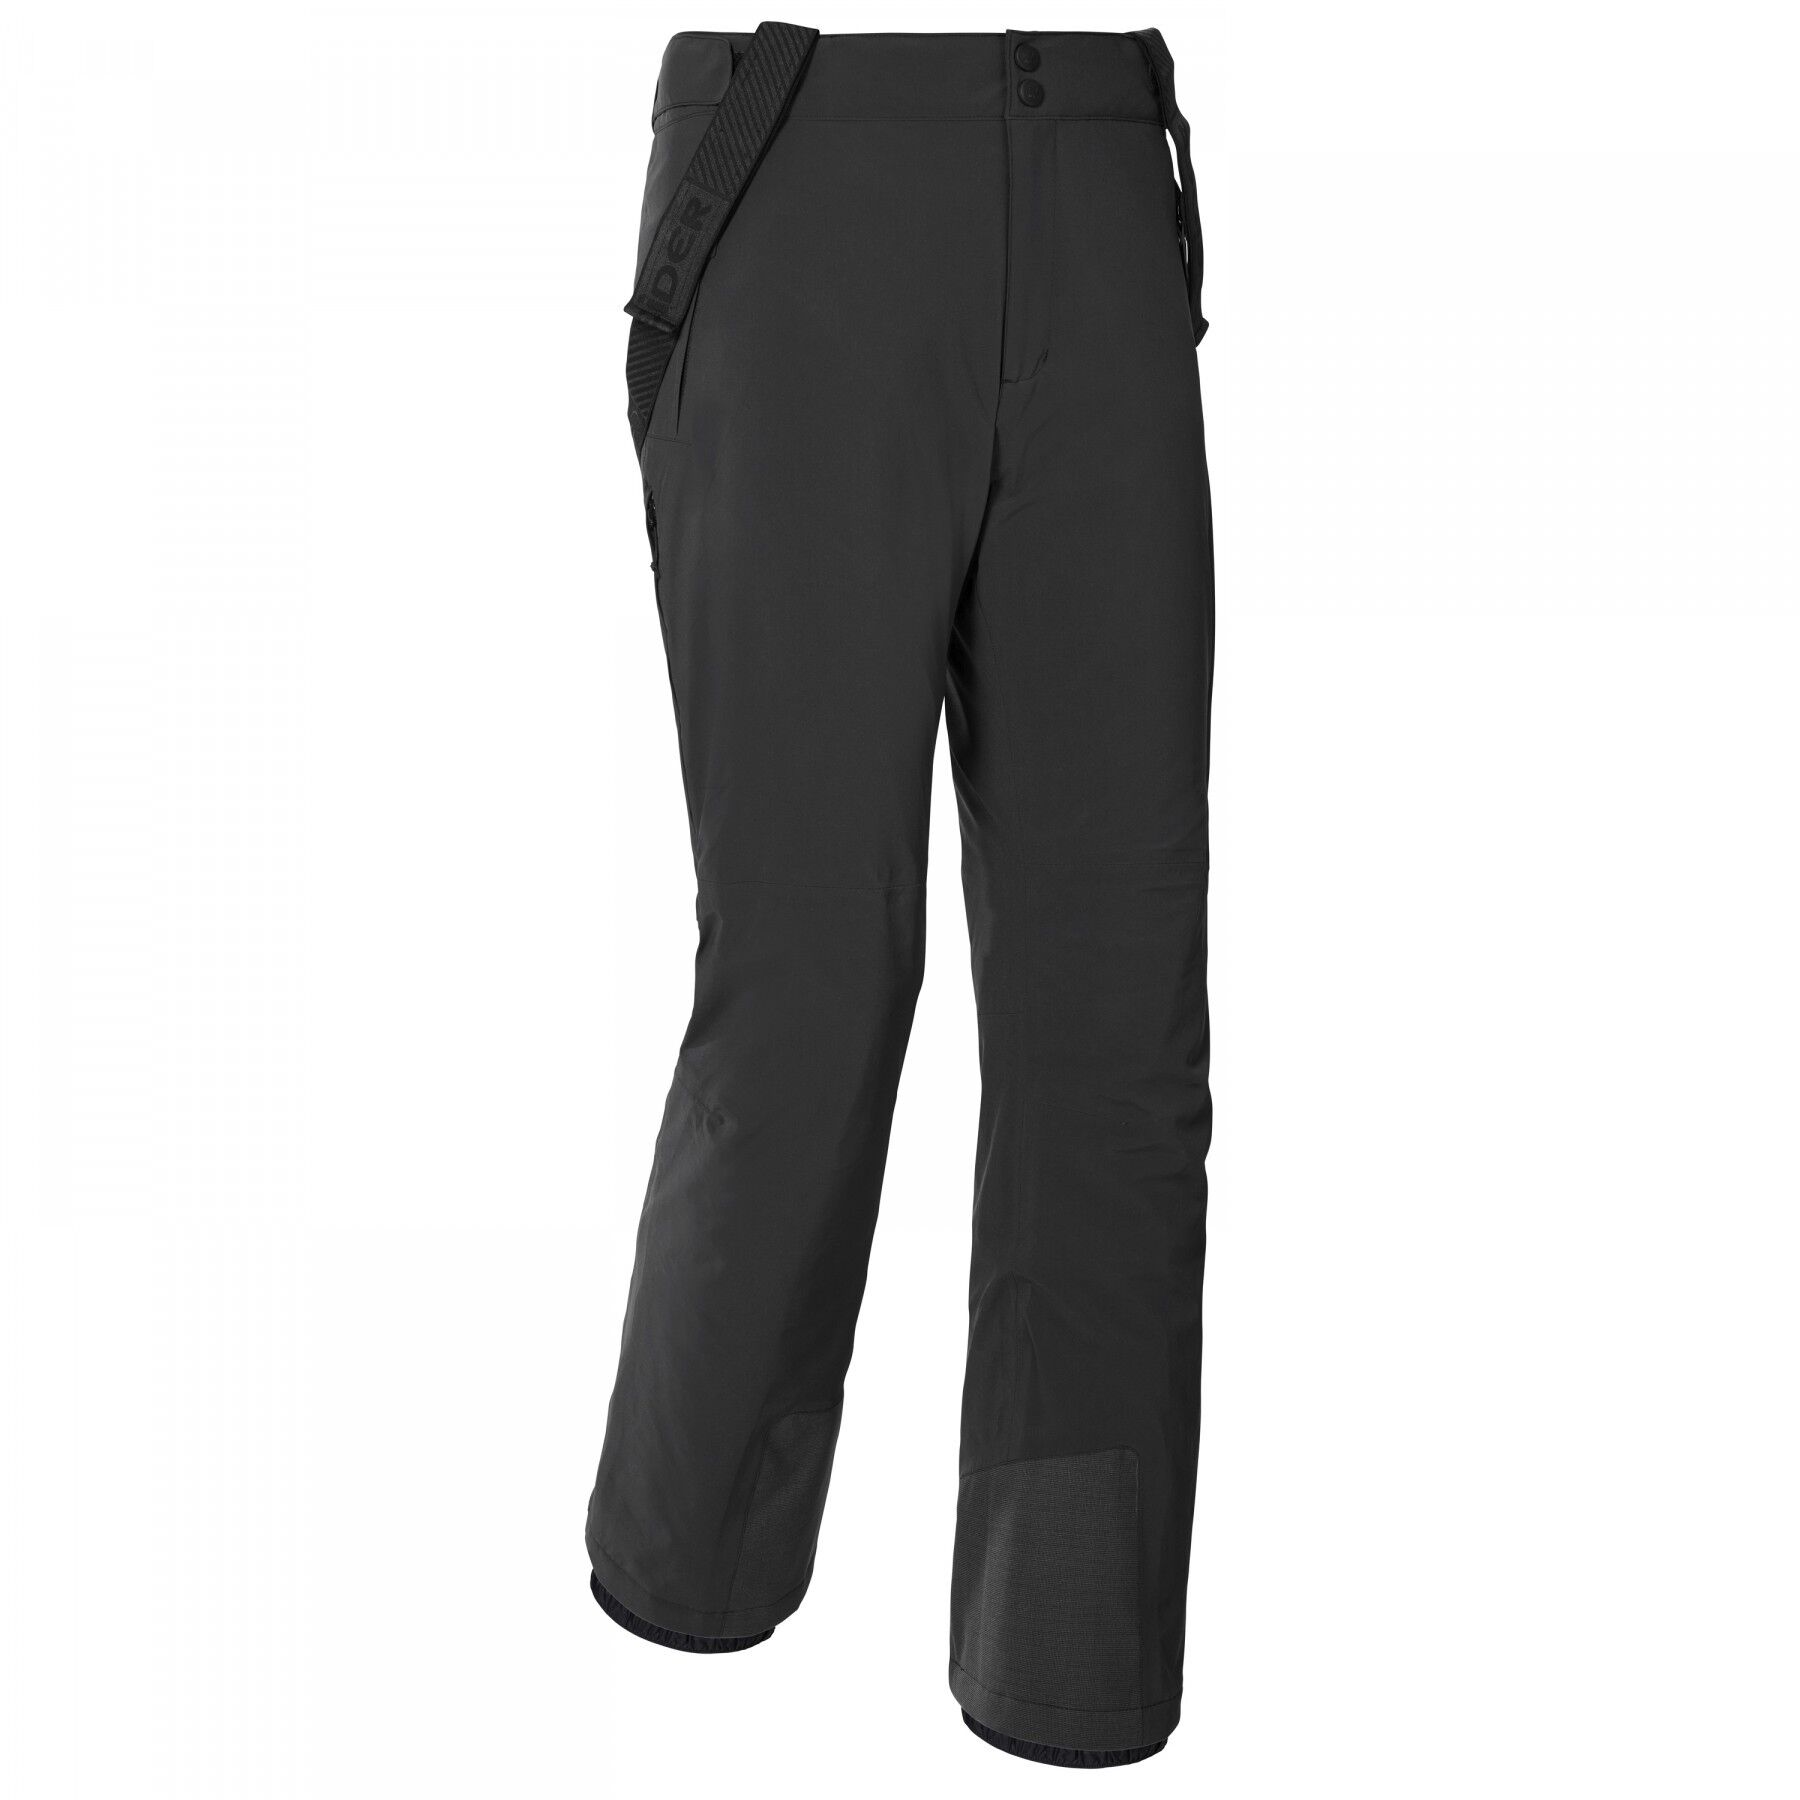 Eider Rocker Pant 2.0 M - Ski trousers - Men's